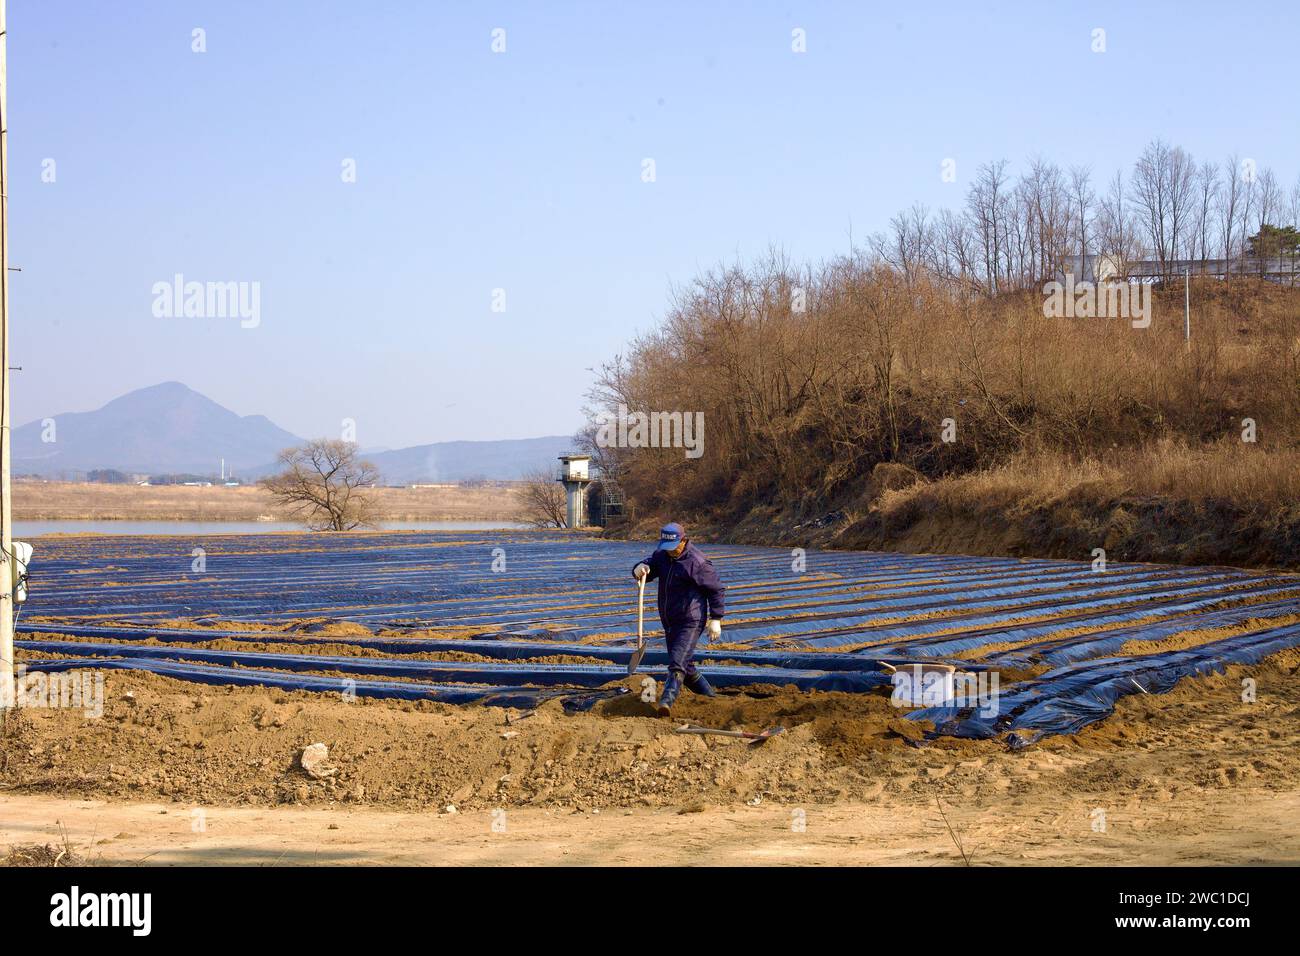 Città di Sangju, Corea del Sud - 2 marzo 2017: Un contadino locale, pala in mano, esce dai suoi campi lungo il fiume Nakdong, che sono coperti di teli Foto Stock